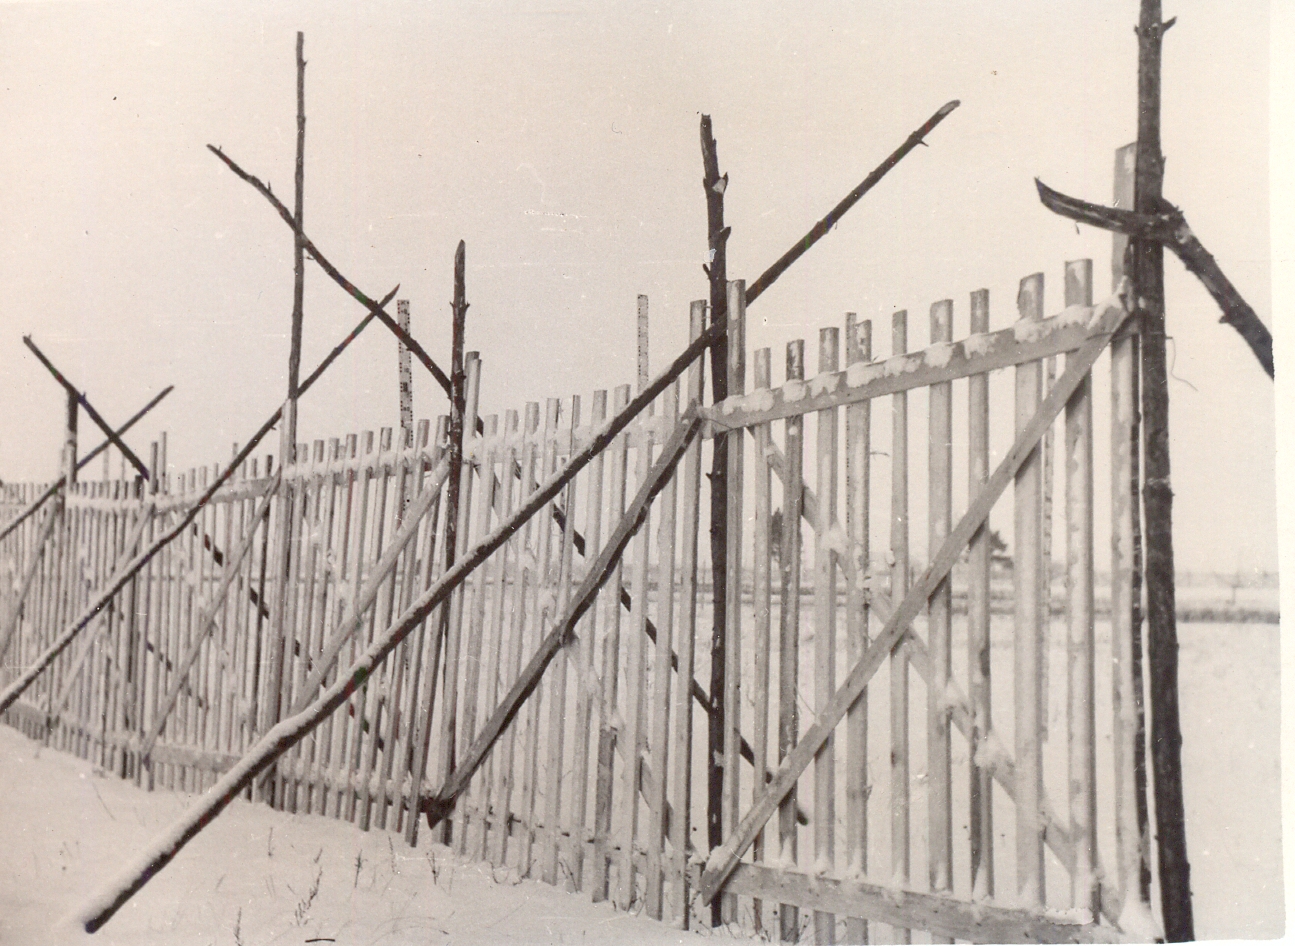 Lumeväravad ehk lumeredelid võeti maanteede kinnituiskamise kaitsemeetmeina kasutusele juba 1930. aastatel. Viimased olid sisuliselt puitlaudadest aiad, mis paigutati talviti tuiskudele avatud maanteede äärde, et takistada lume kuhjumist teele. 1940. aastal hinnati, et Eestis oli kokku ligi 200 000 lumeväravat, millest arvati piisavat 350 km maanteede jaoks. Uue hoo sai lumeväravate paigaldamine sõjajärgsetel aastatel. (Foto: Eesti Maanteemuuseum)